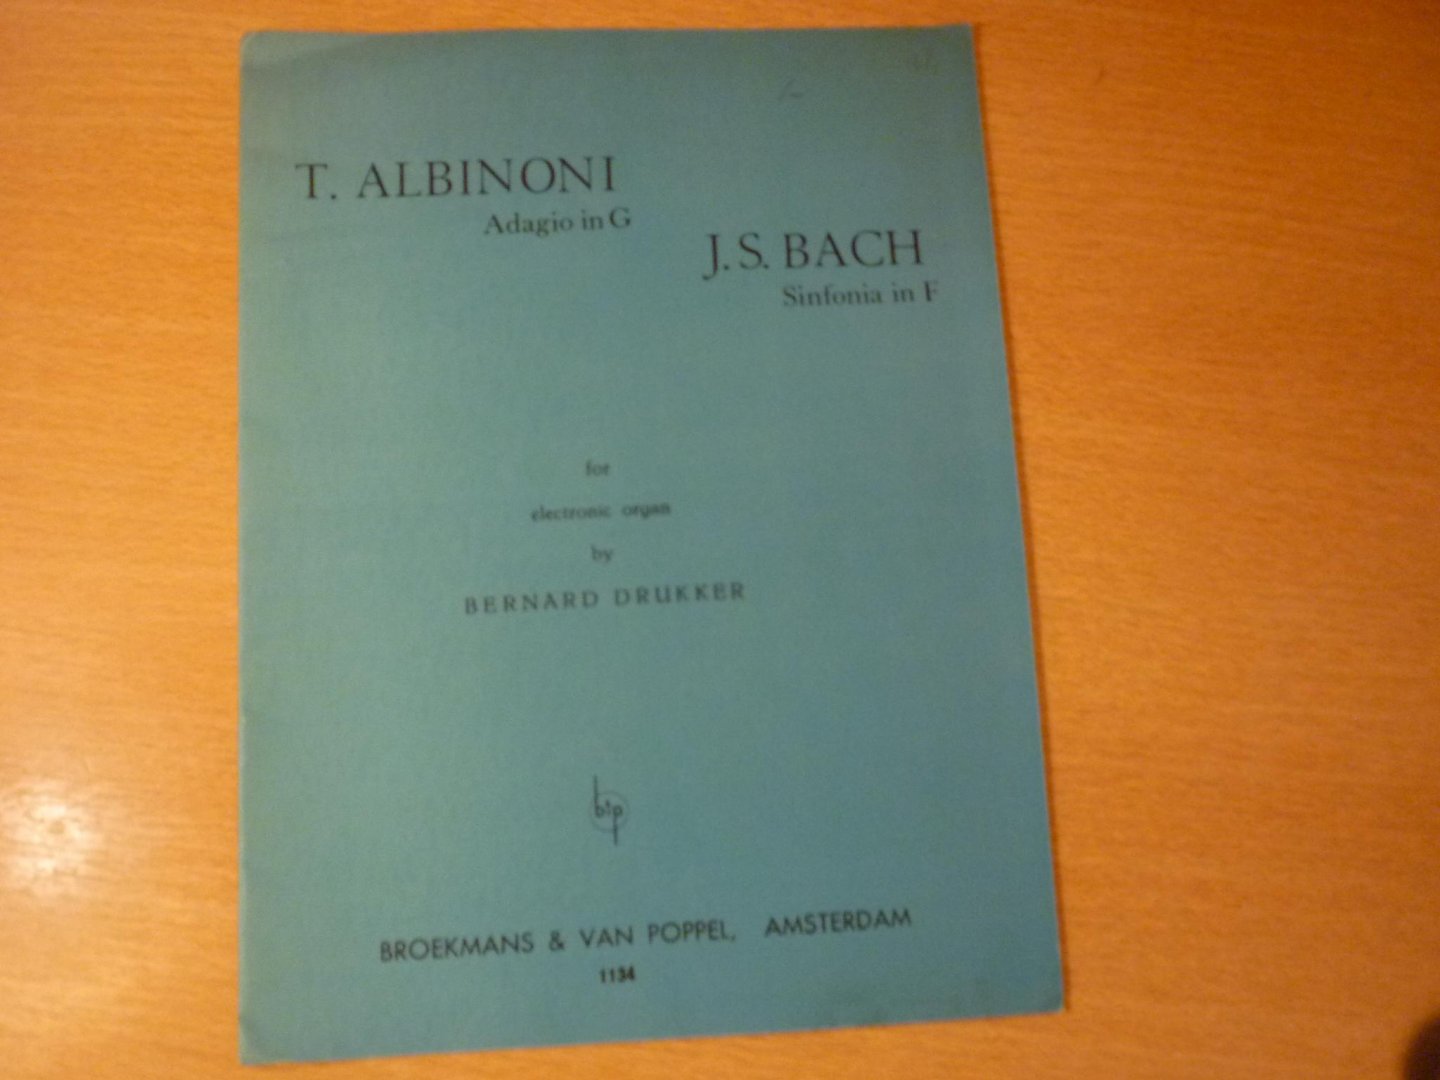 Drukker; Bernard - Albinoni; T; Adagio in G  /  J.C. Bach: Sinfonia in F; (arranged by Bernard Drukker)